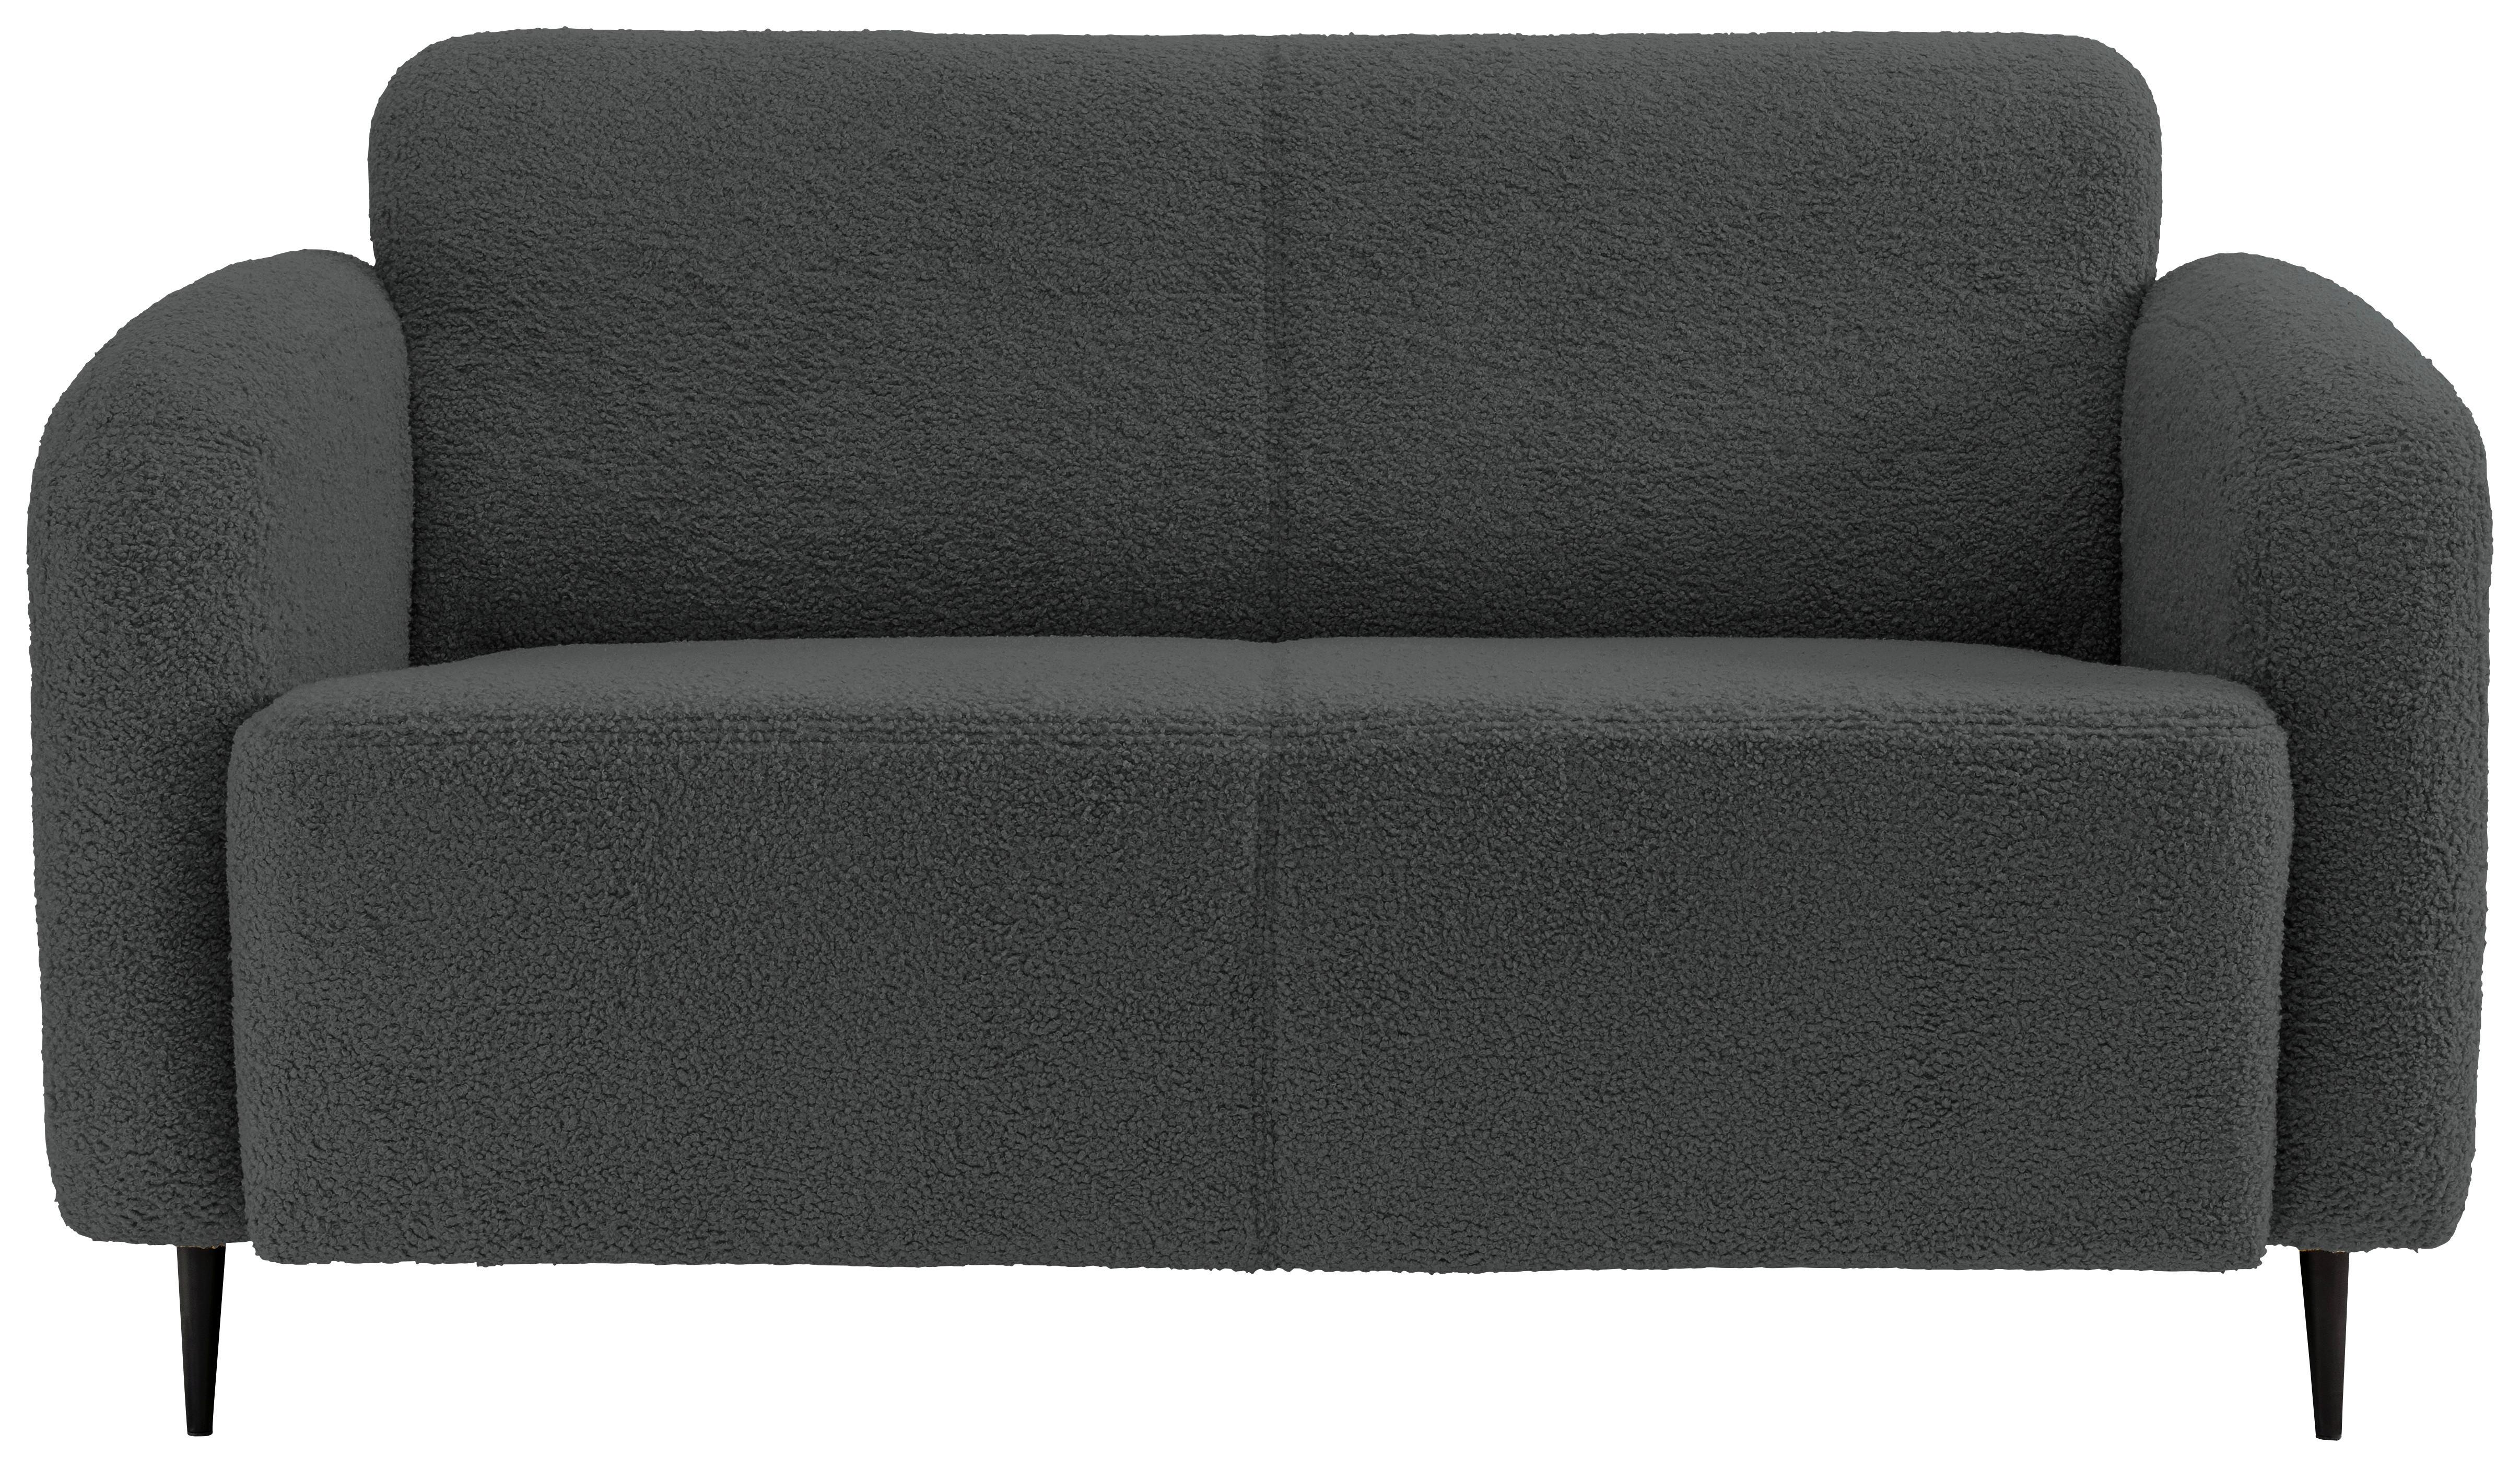 2-Sitzer-Sofa Marone Anthrazit Teddystoff - Anthrazit/Schwarz, MODERN, Textil (140/76/90cm) - Livetastic